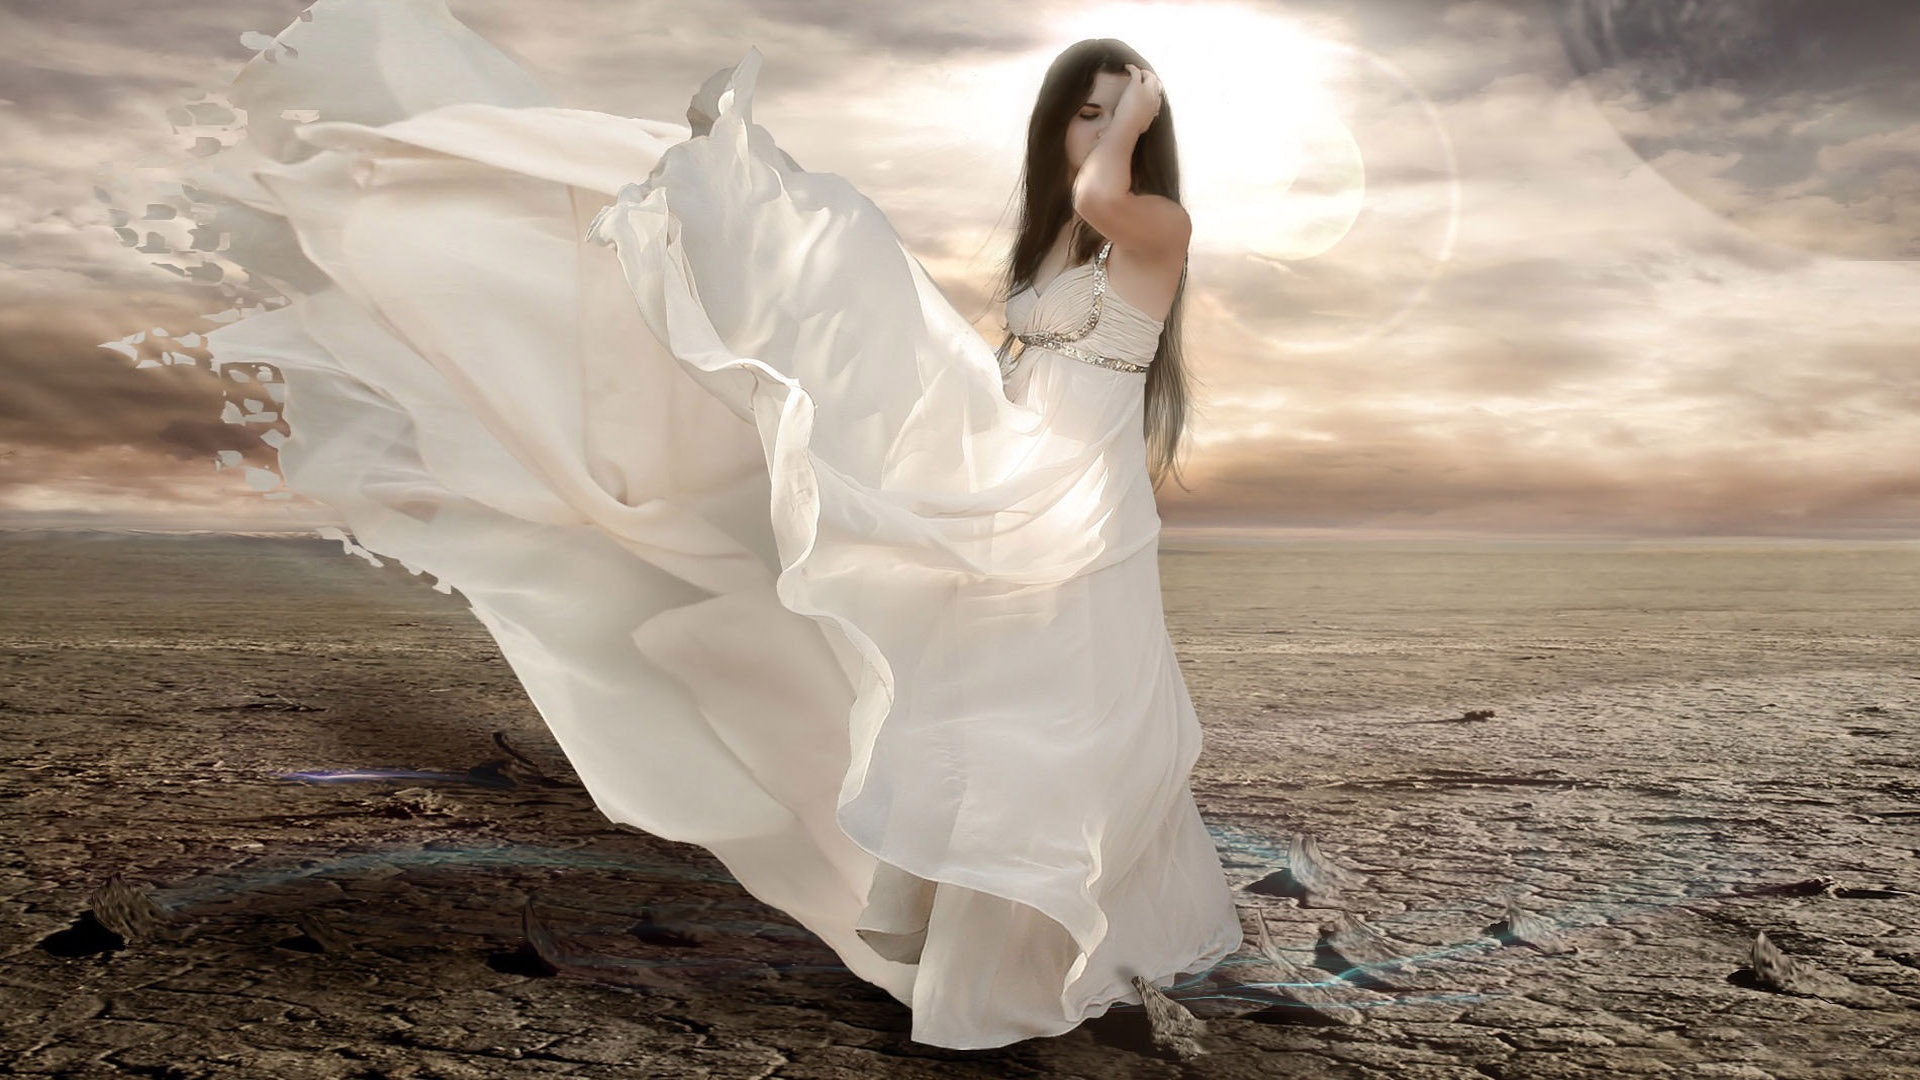 Girl in a white dress in the desert